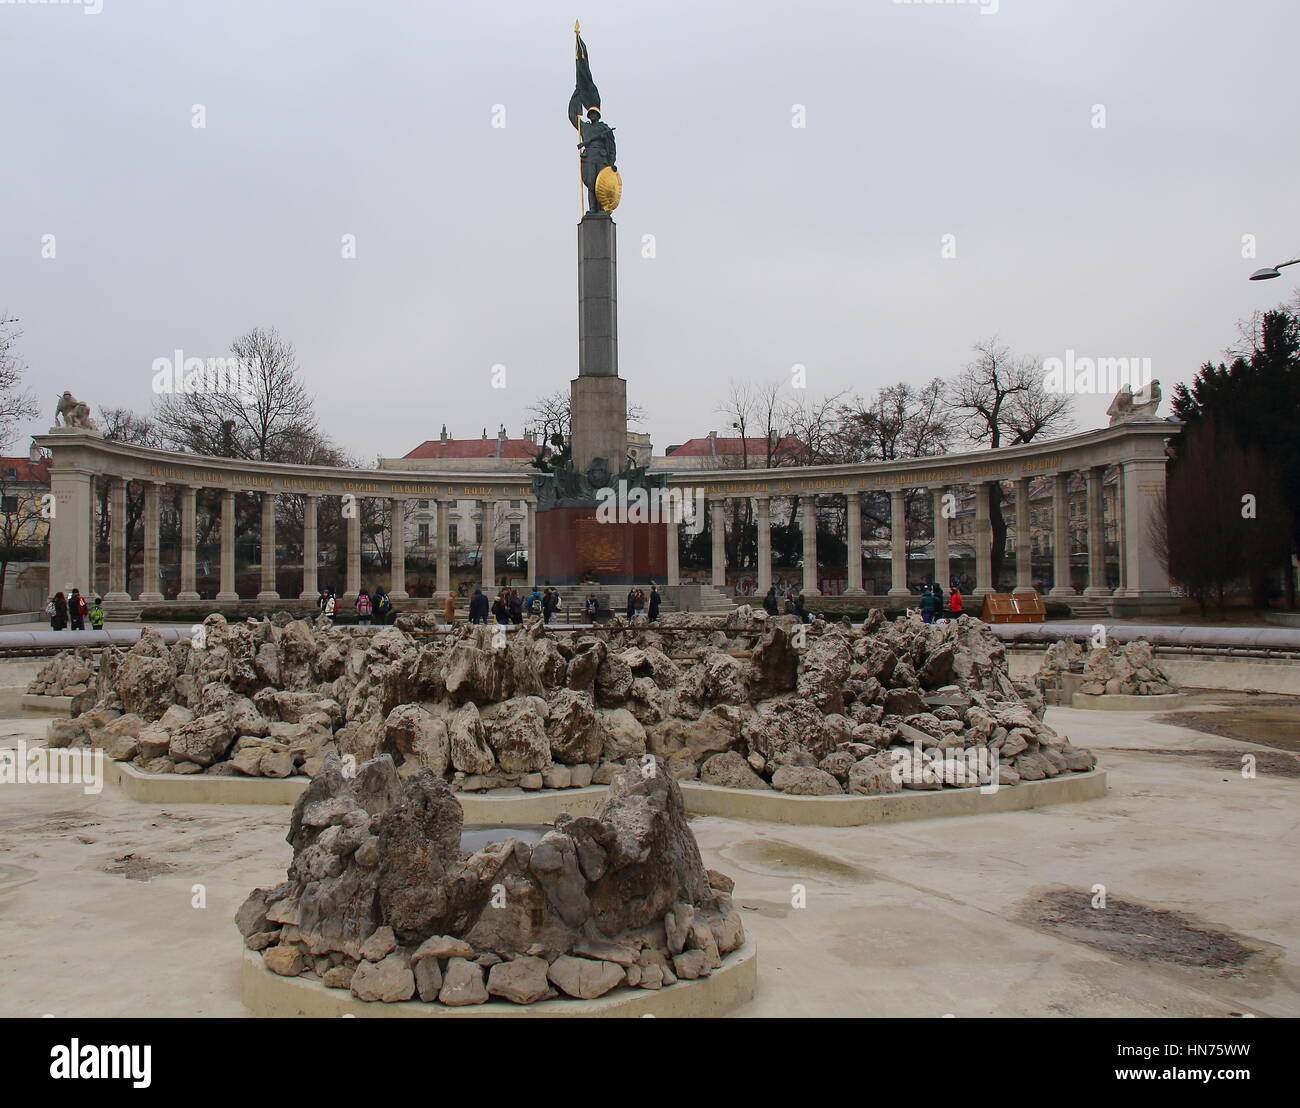 Hochstrahlbrunnen et le mémorial de guerre soviétique à Vienne Autriche libre au format paysage with copy space Banque D'Images